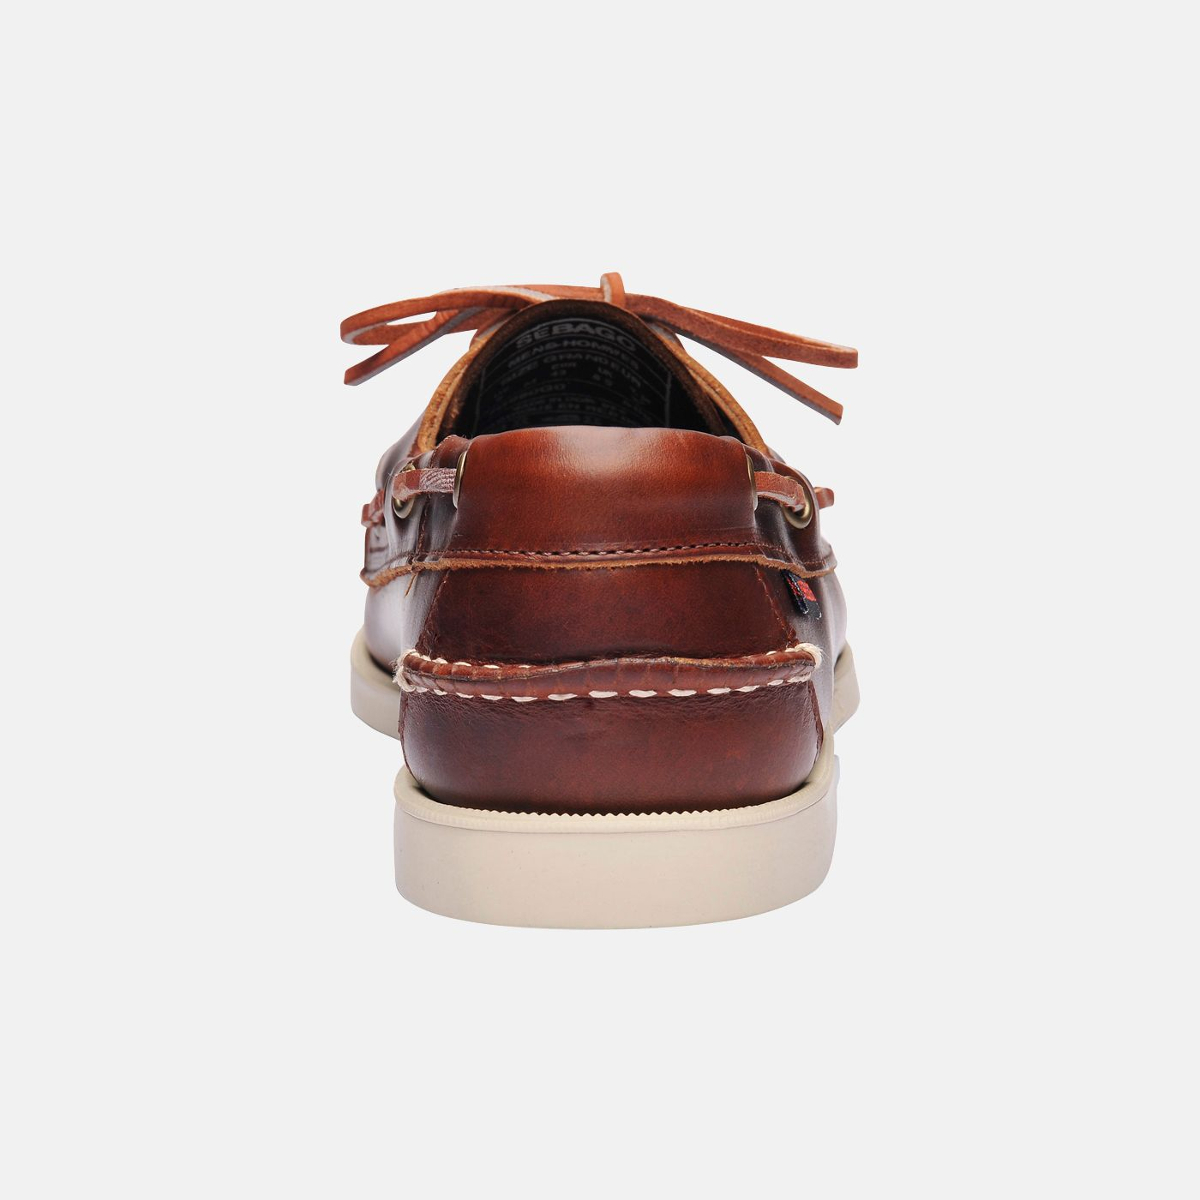 Sebago Docksides bootschoen heren brown oiled waxy leather, maat EU 46.5 (US 12)